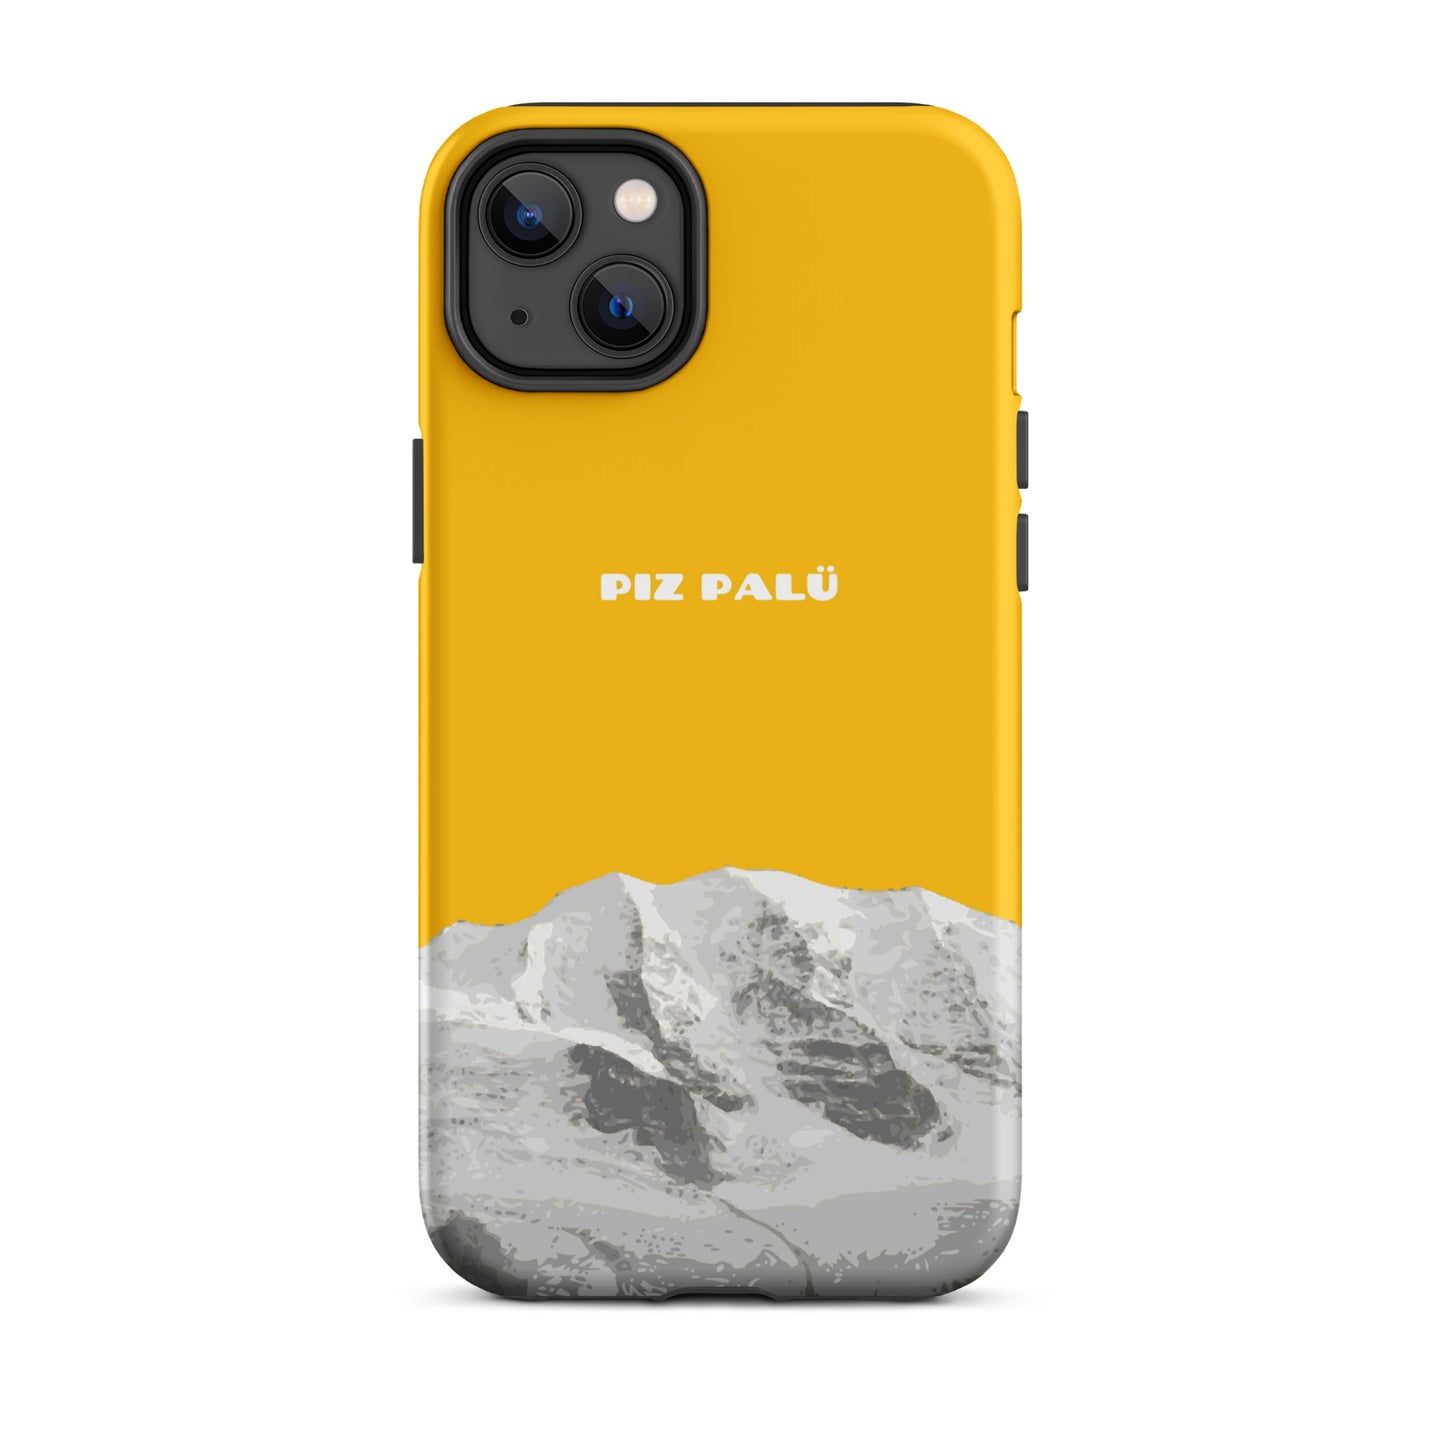 Hülle für das iPhone 14 Plus von Apple in der Farbe Goldgelb, dass den Piz Palü in Graubünden zeigt.